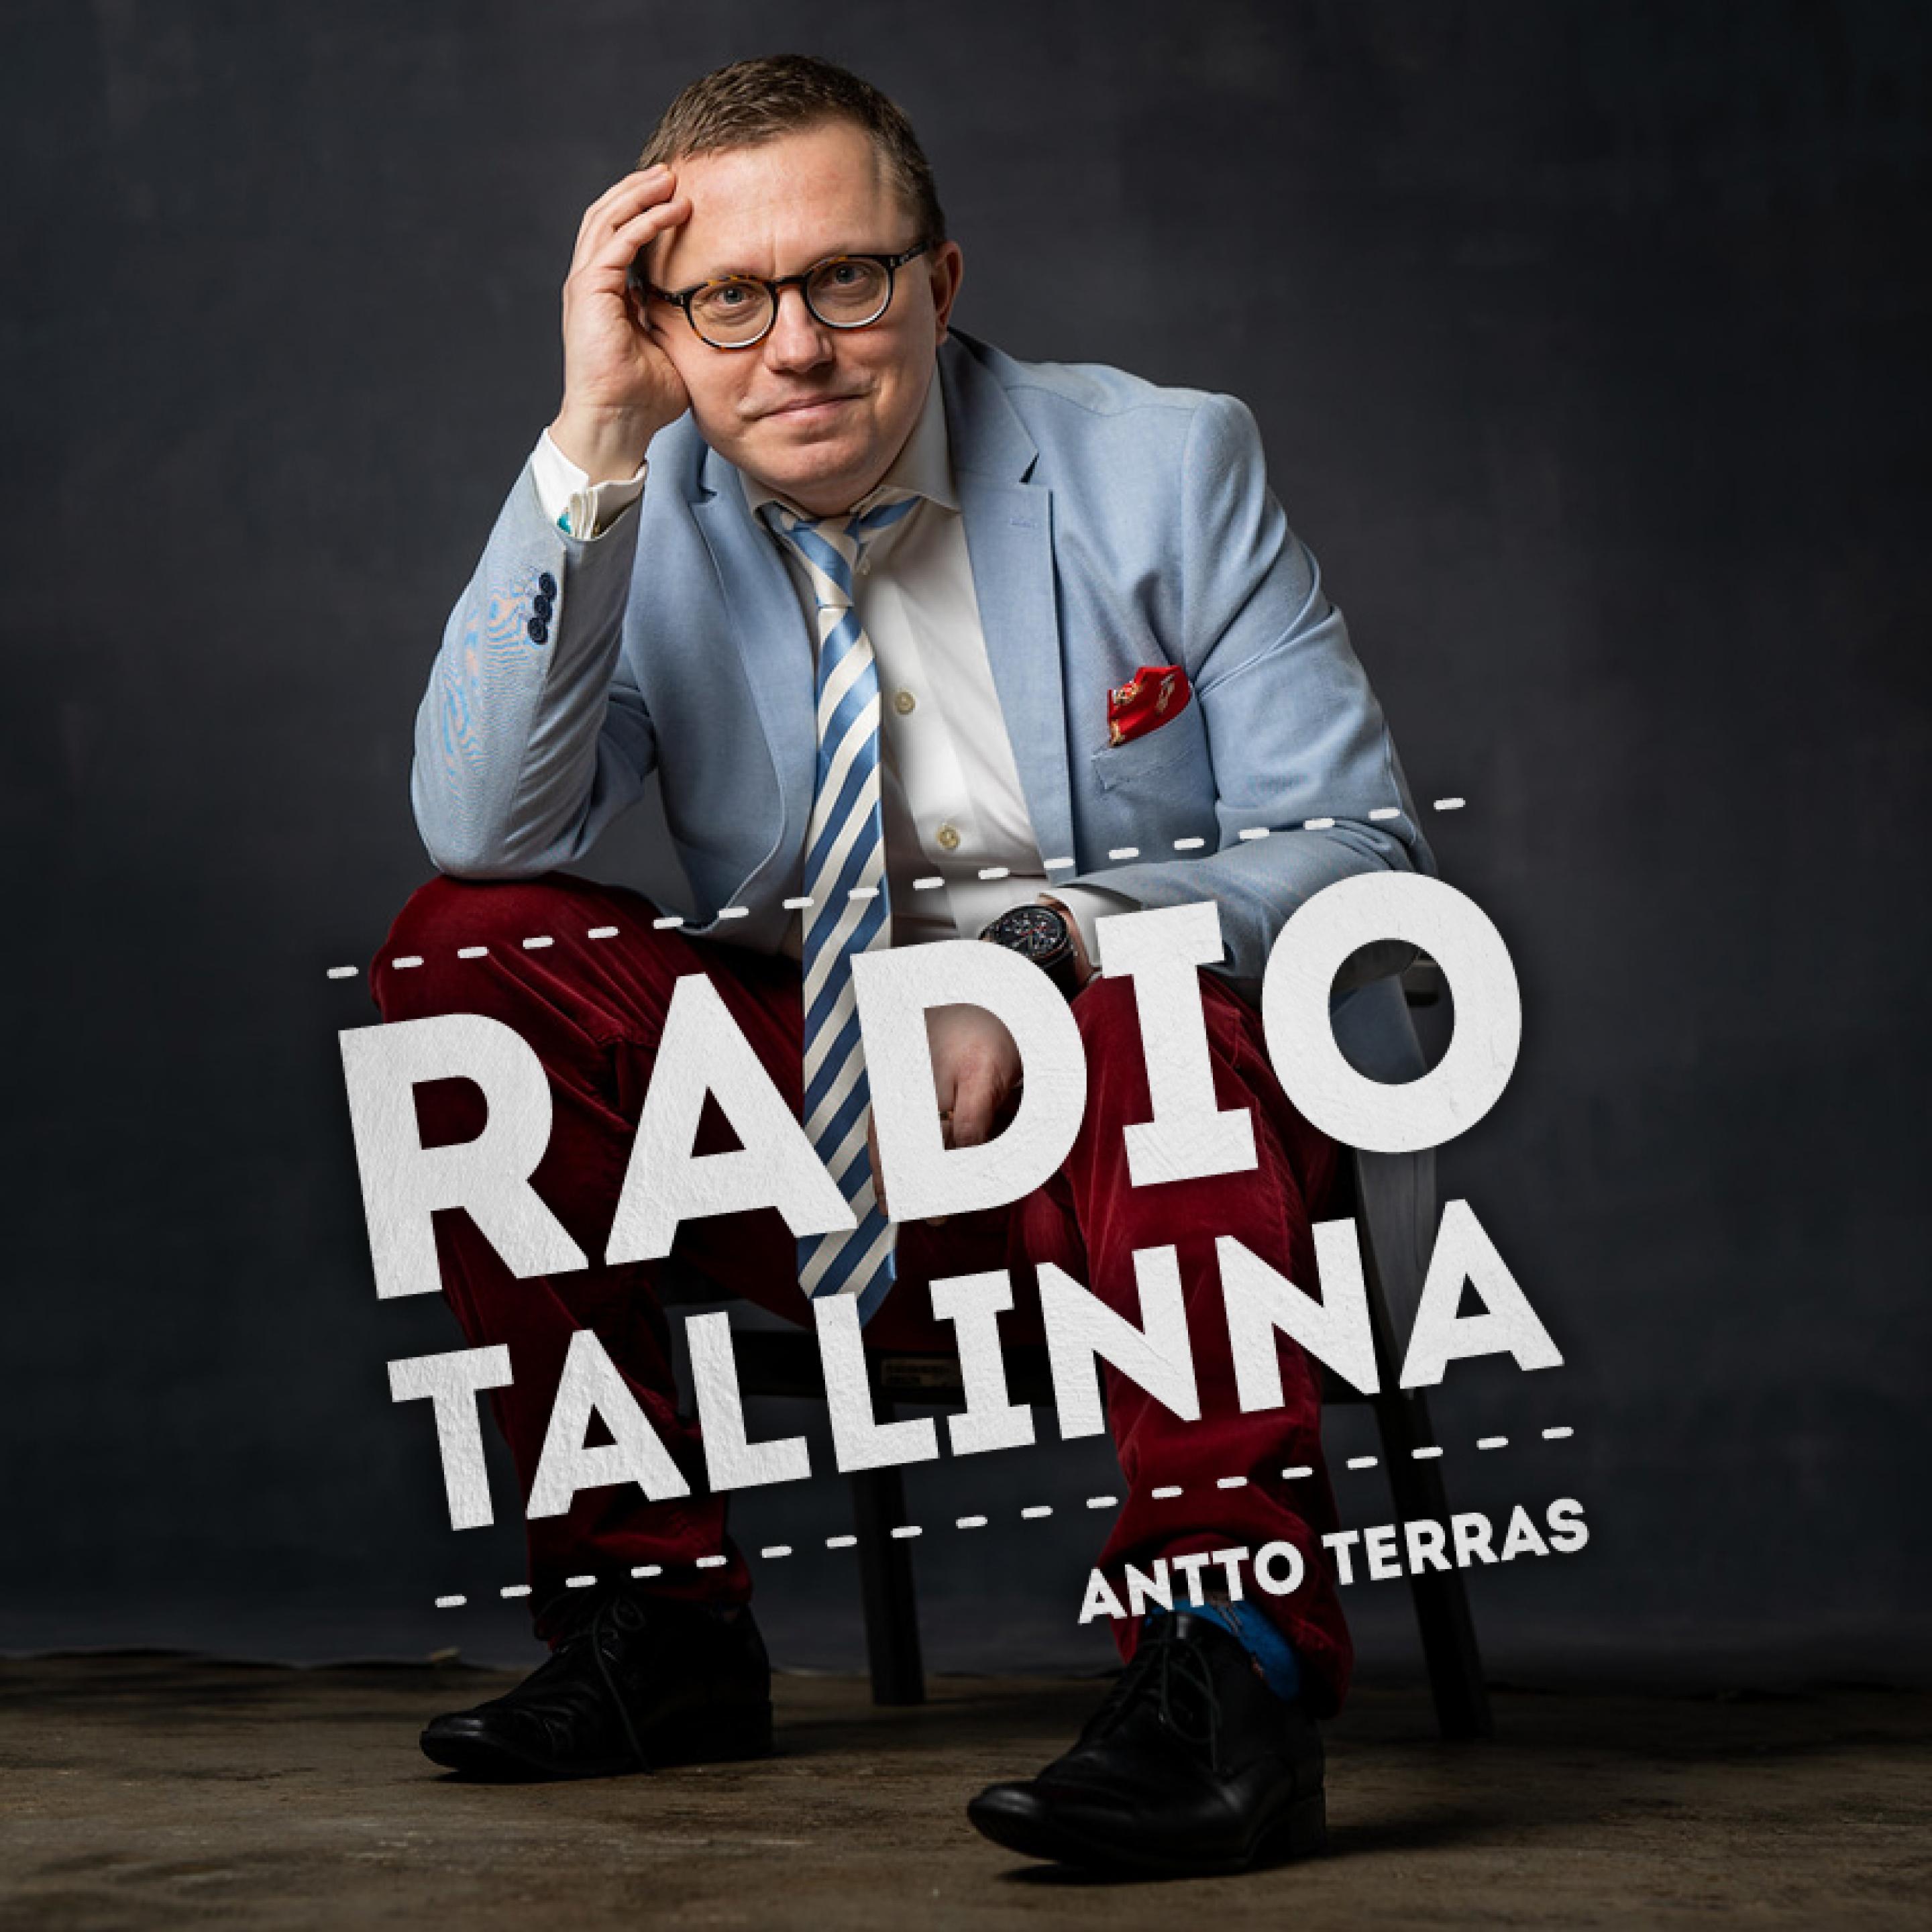 Kalle Palander: "Haluatteko tietää, miltä tuntuu omistaa kartano Virossa?"